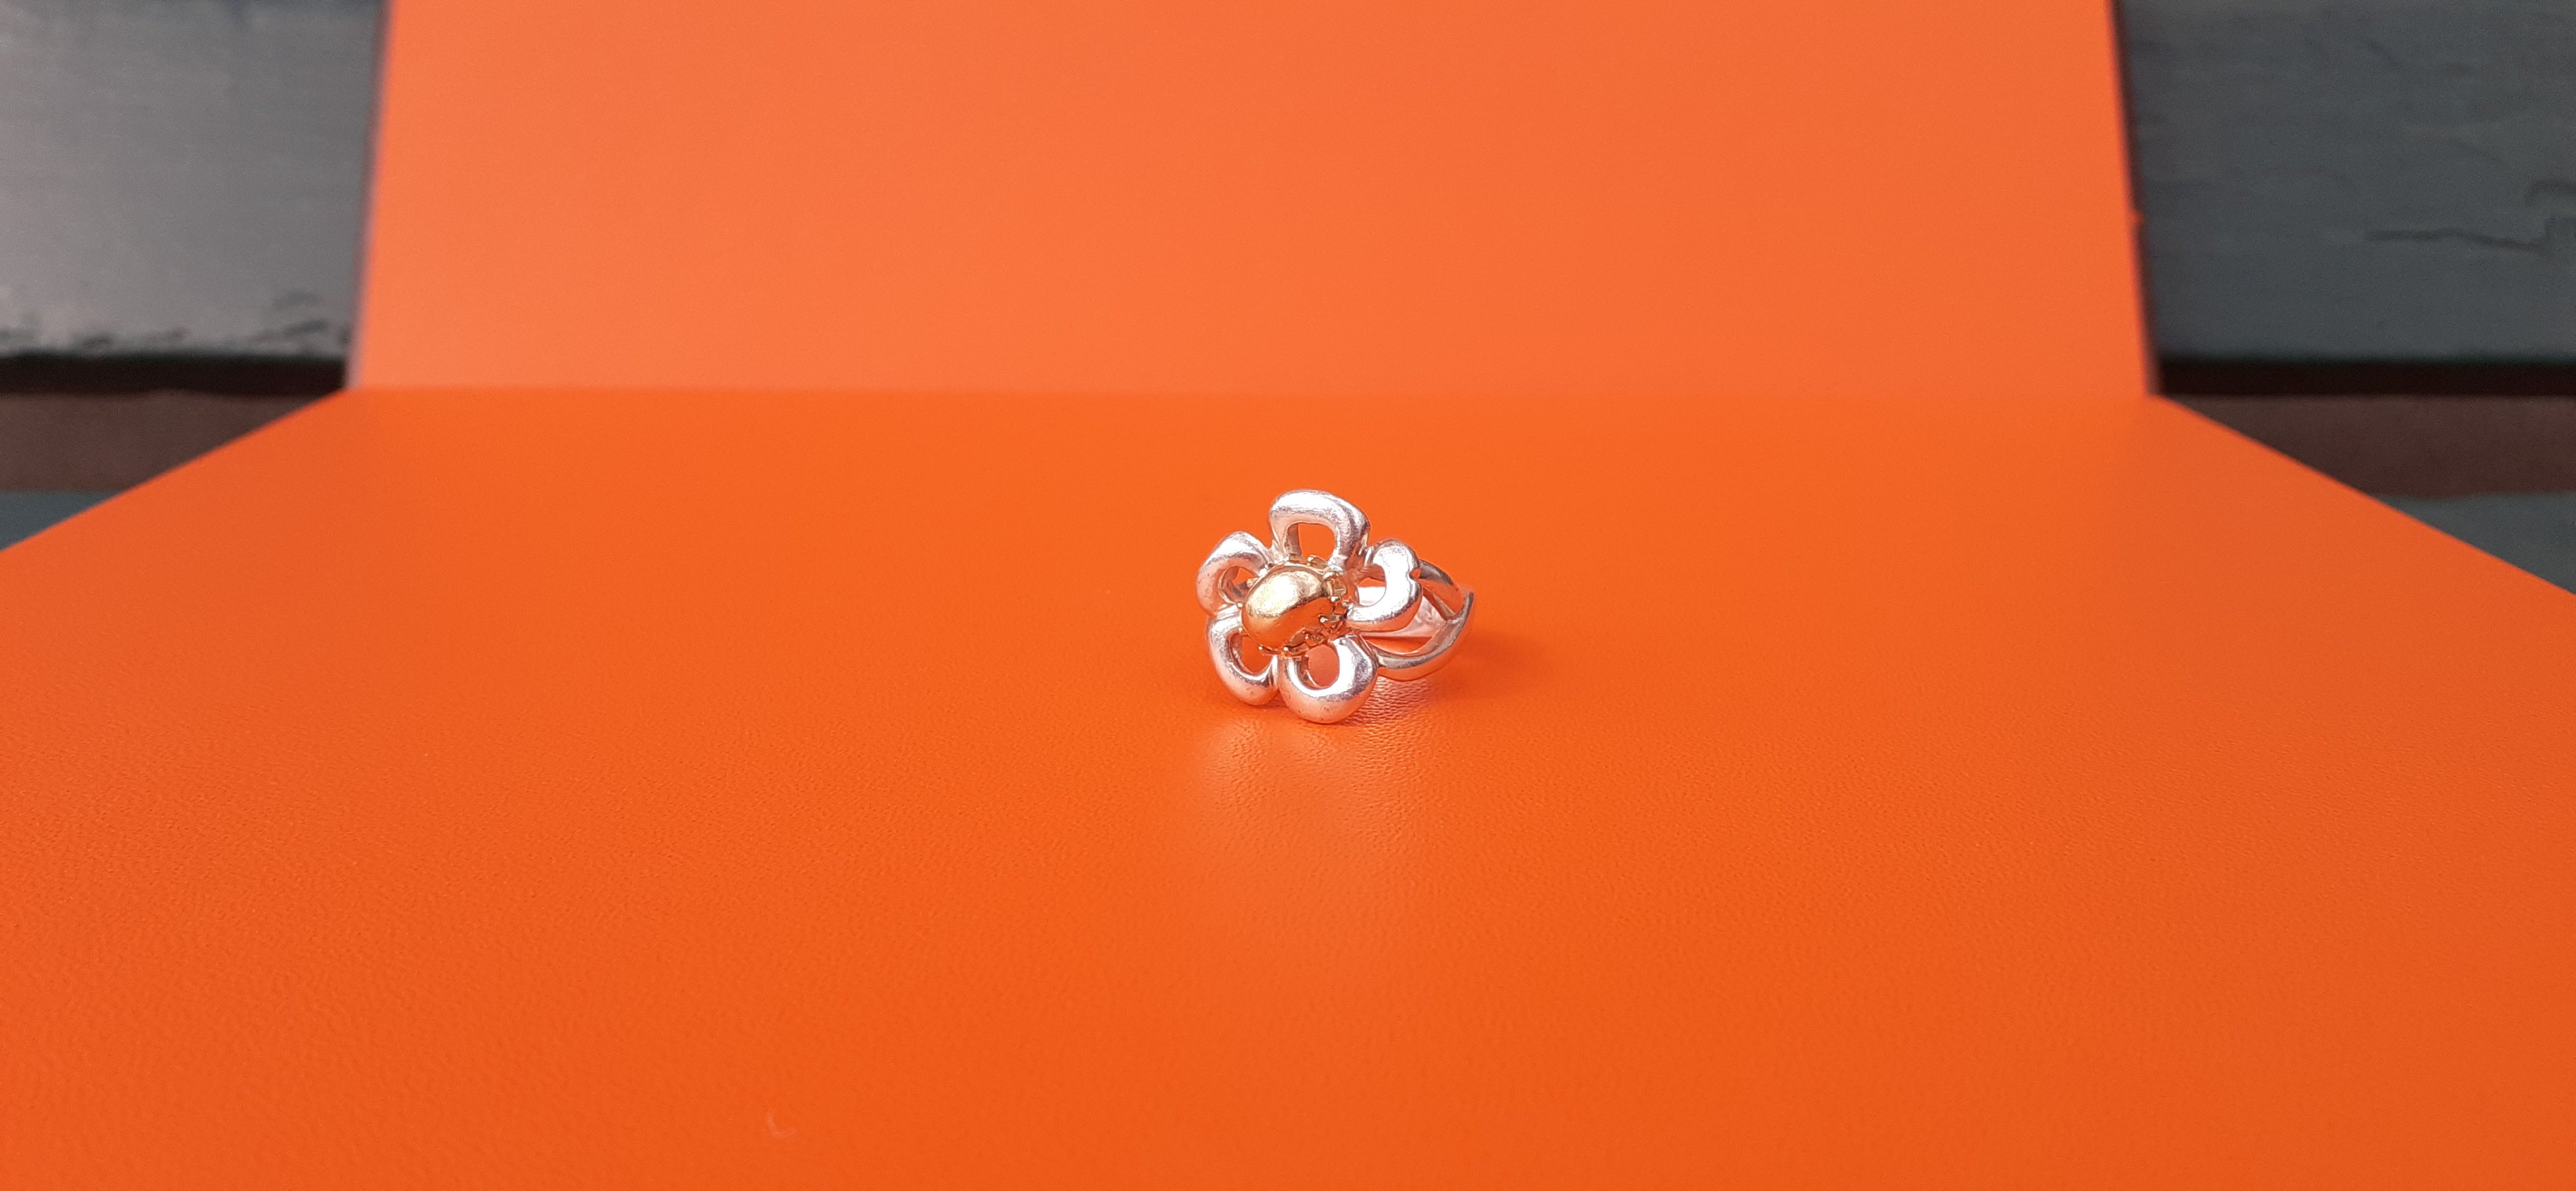 Schöner und seltener authentischer Hermès Ring

In Form einer Blume mit 5 Blütenblättern

Hergestellt aus Silber 925 und Gelbgold in der Mitte

Innen eingraviert 